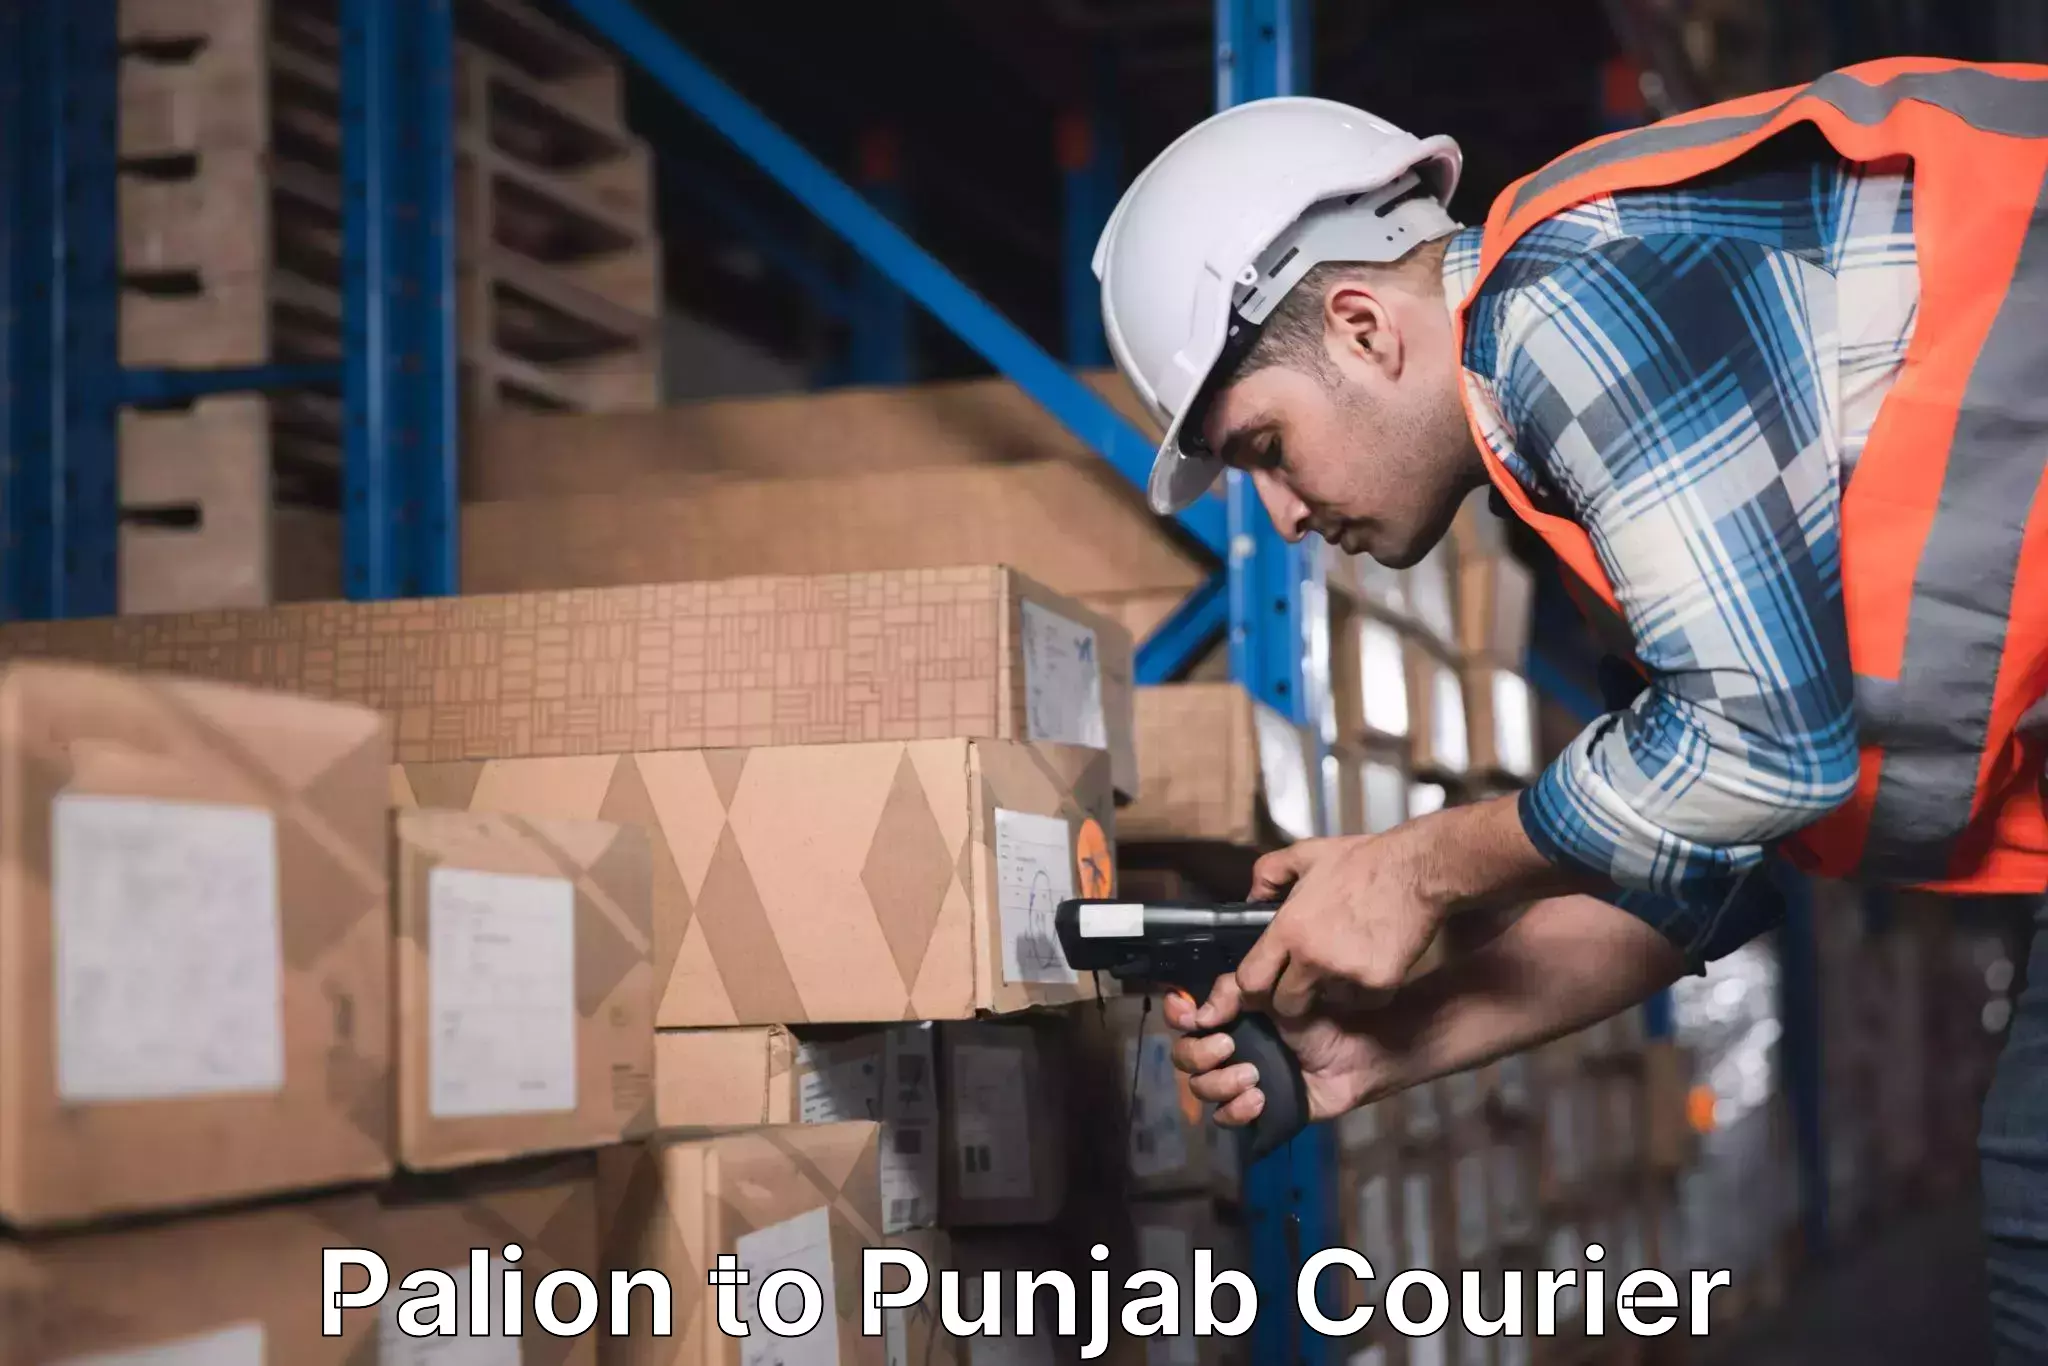 Courier service comparison Palion to Pathankot